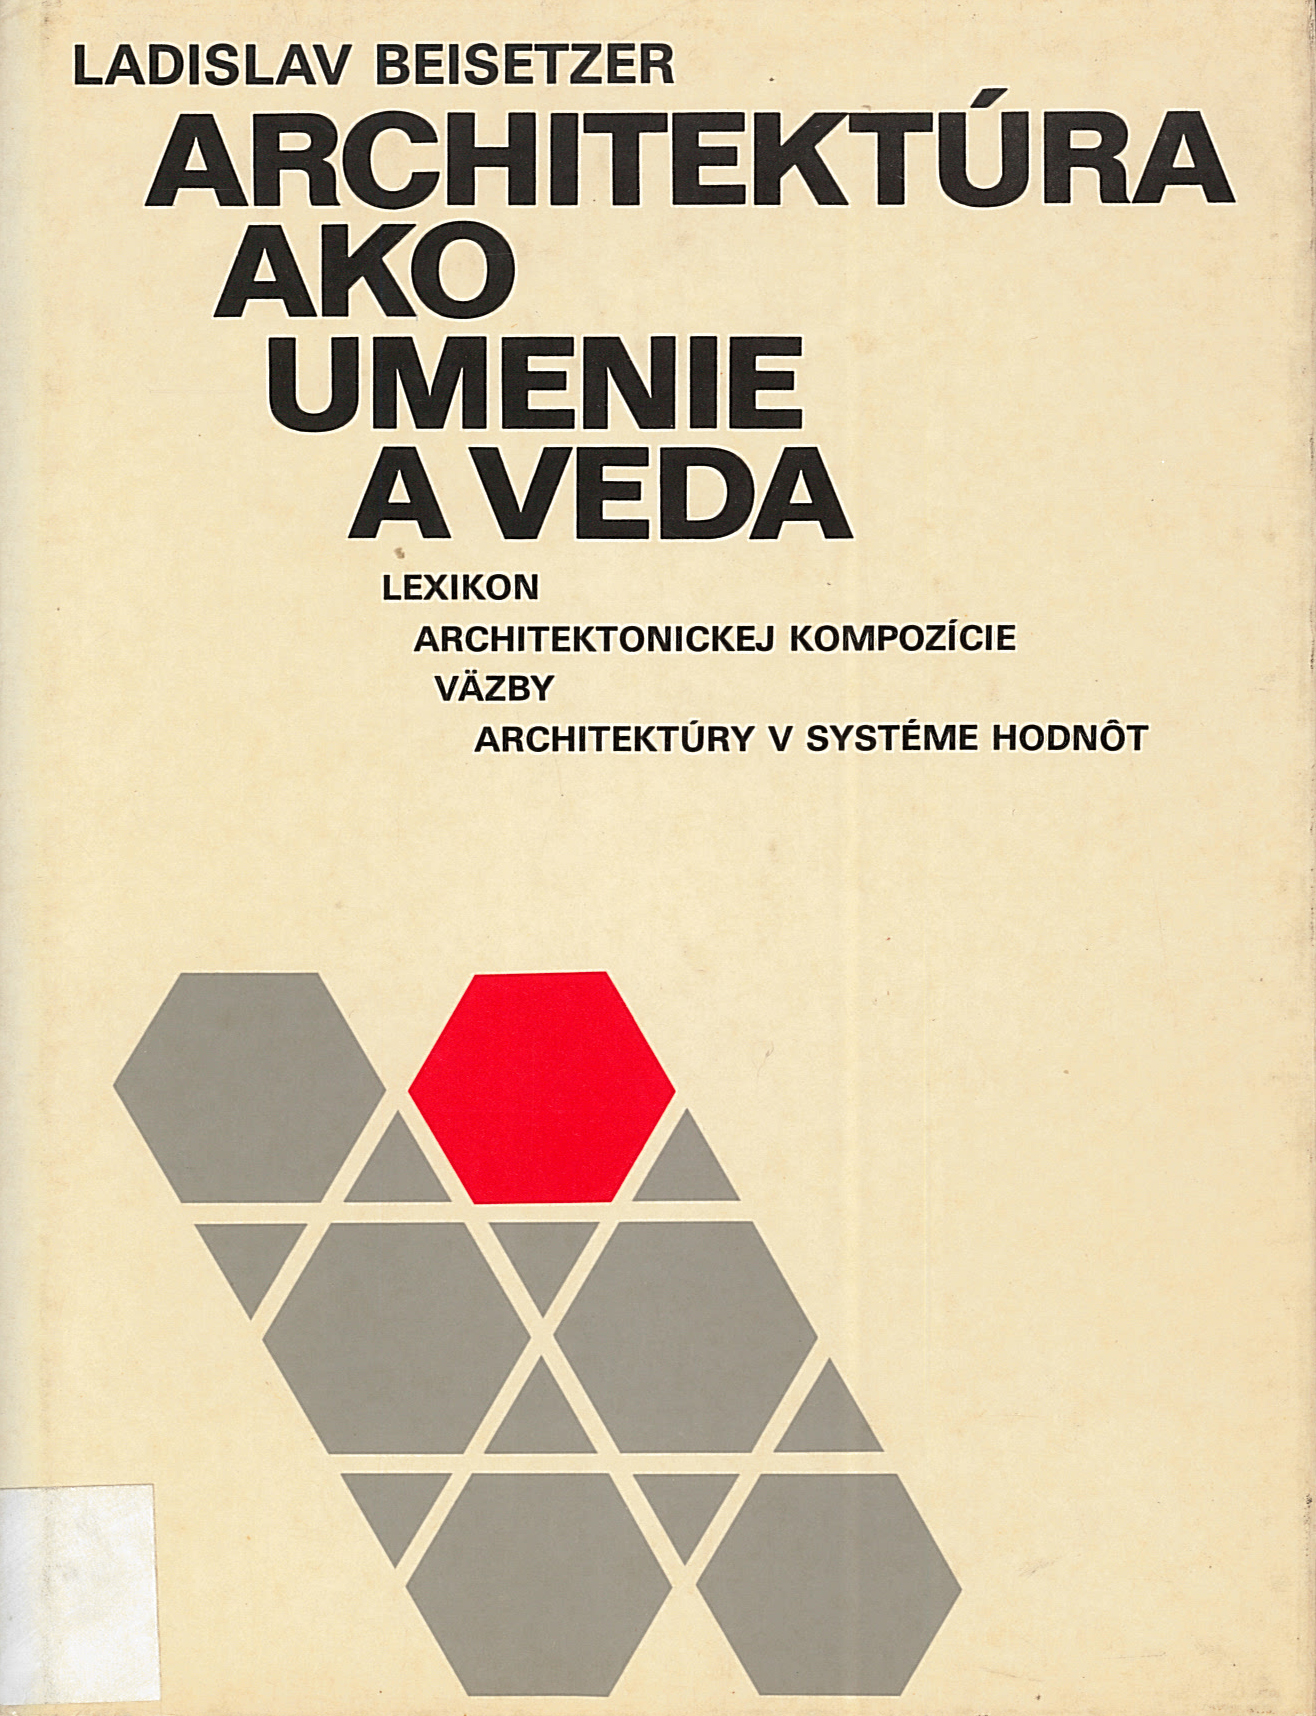 Architektúra ako umenie a veda (Ladislav Beisetzer)